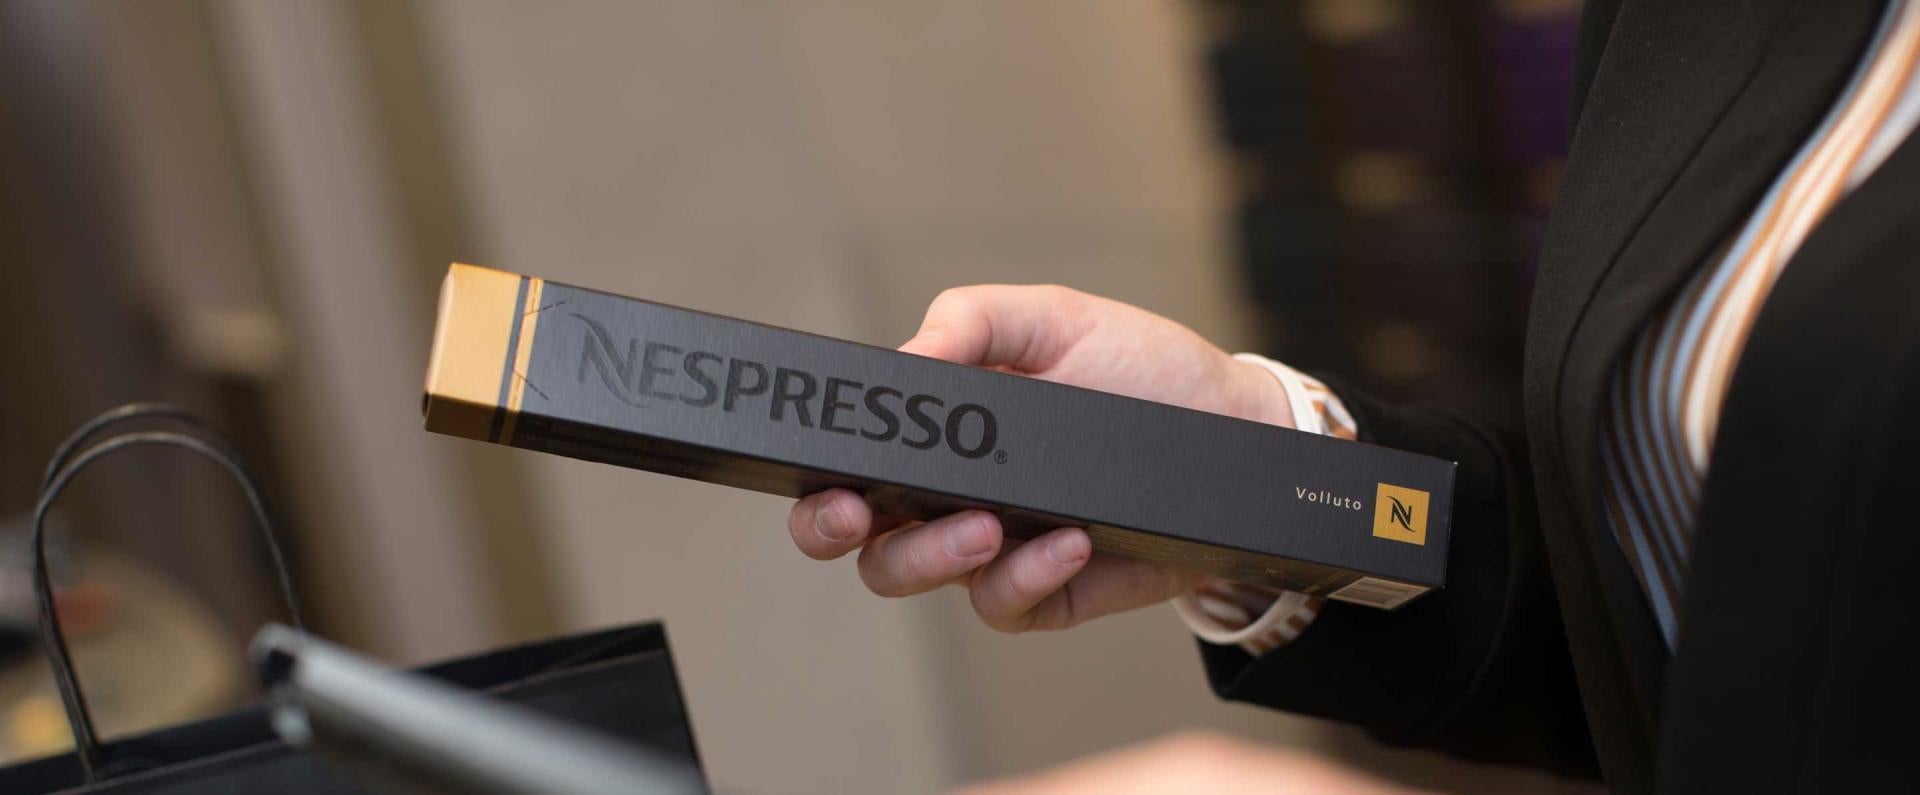 Nespresso Retail Checkout